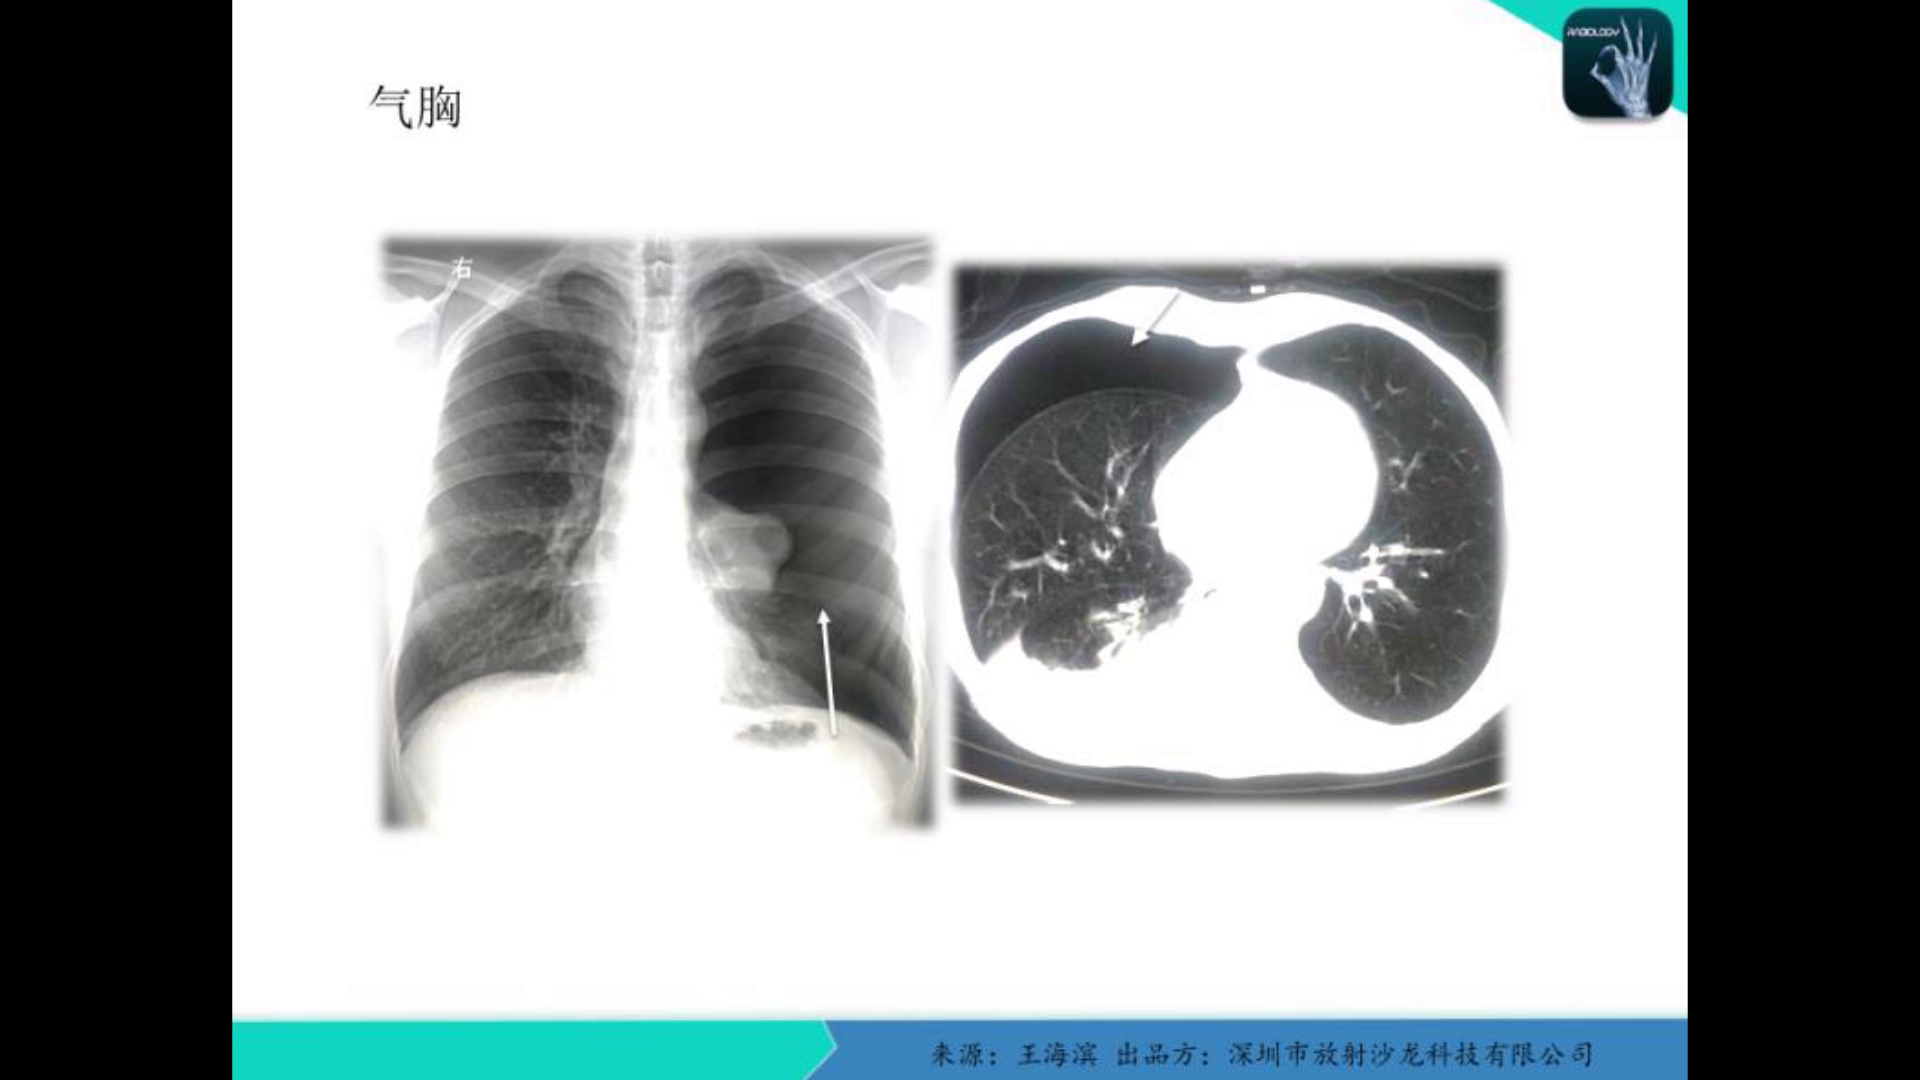 肺的结构-外科学-医学